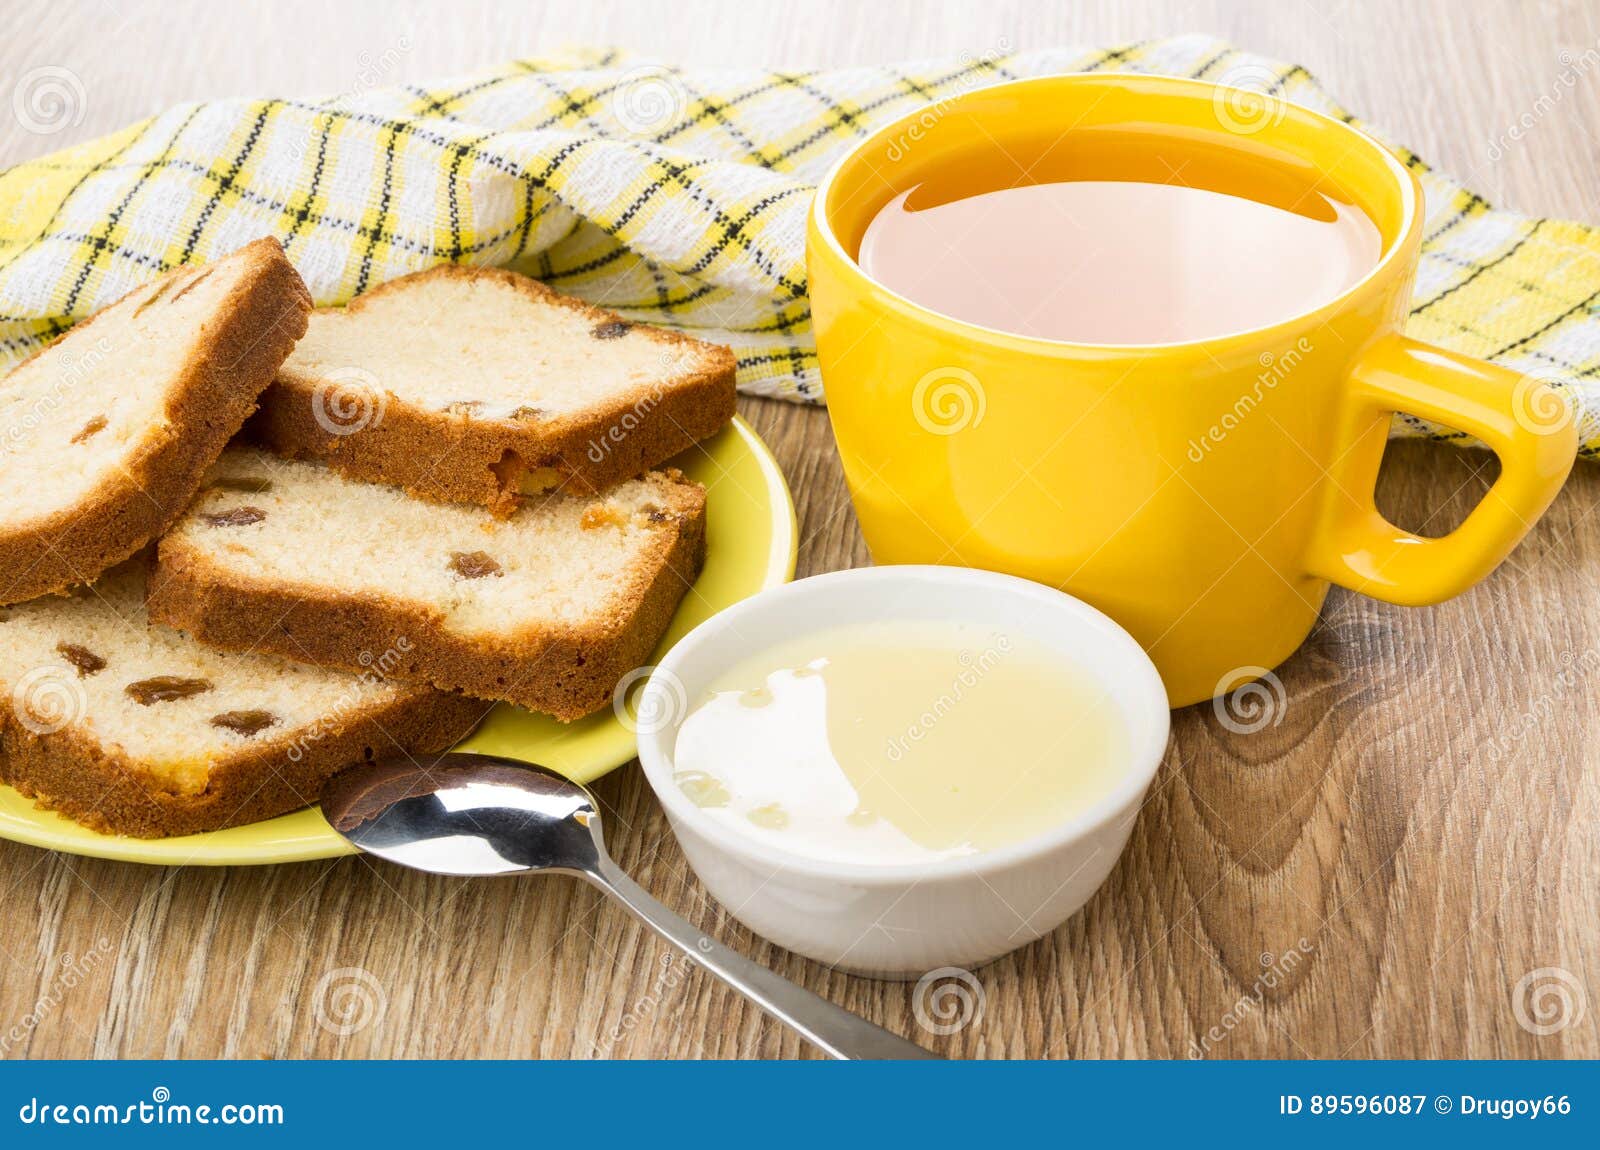 在茶碟，碗的松饼用浓缩牛奶，茶. 松饼用在茶碟、碗用浓缩牛奶，茶和匙子的葡萄干在木桌上